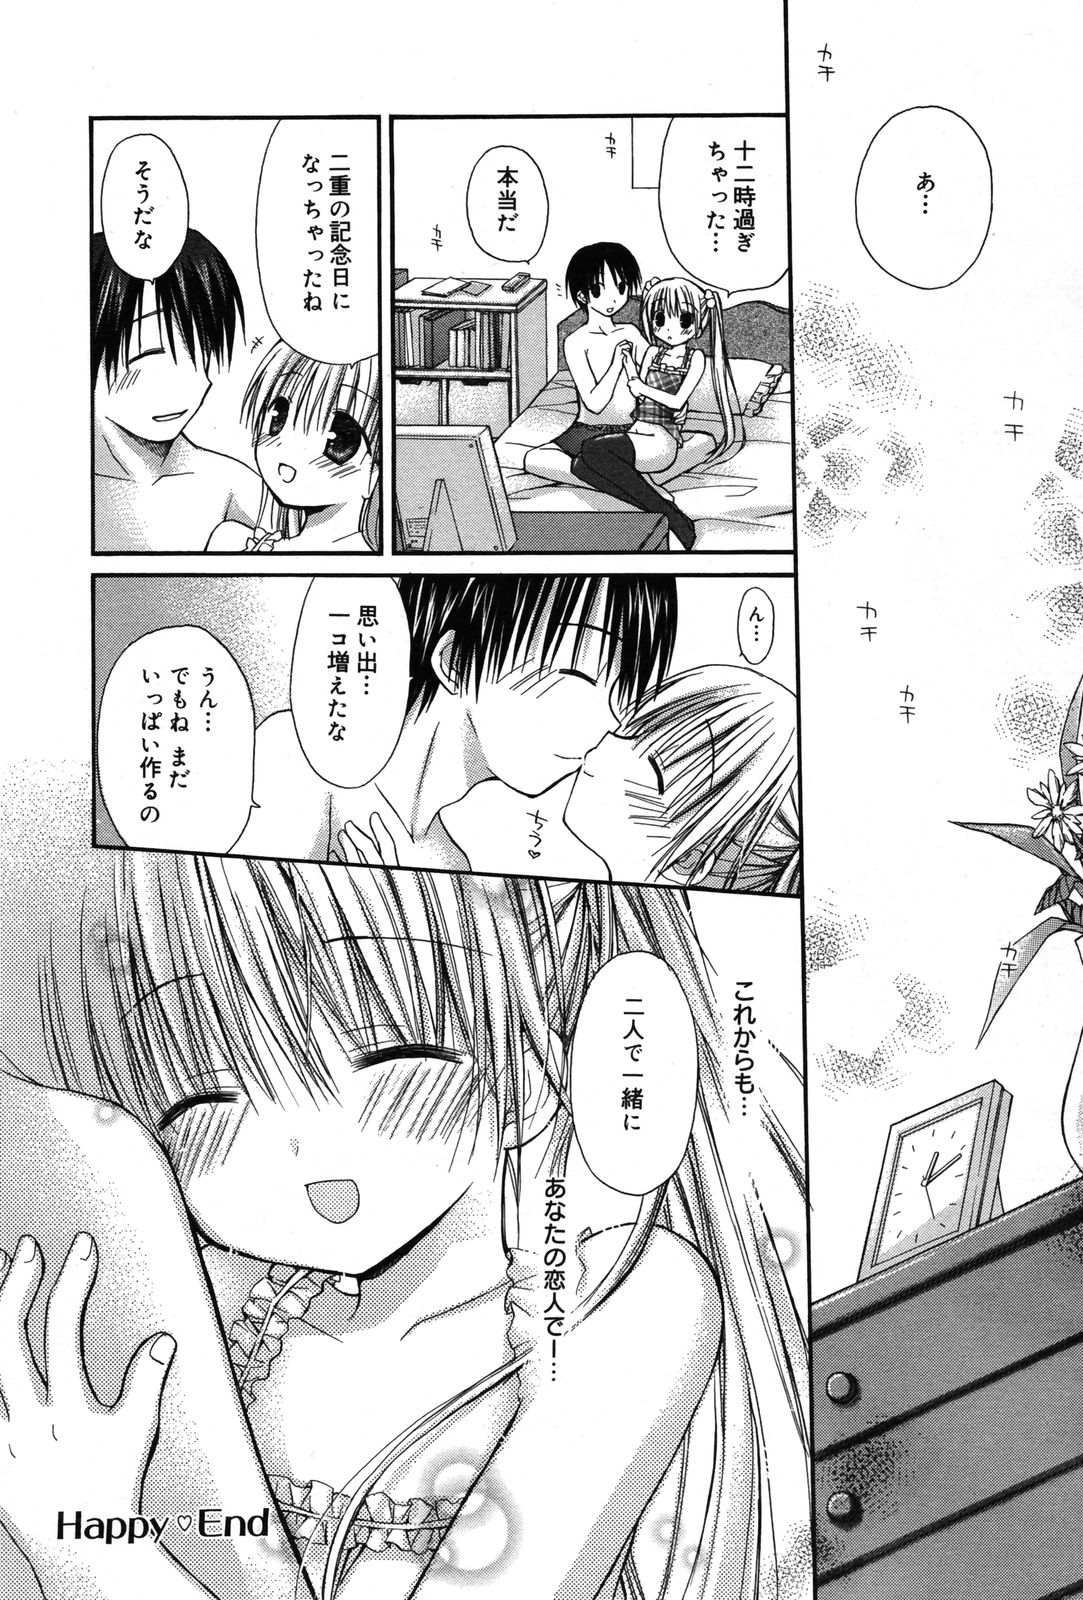 Manga Bangaichi 2007-05 page 49 full